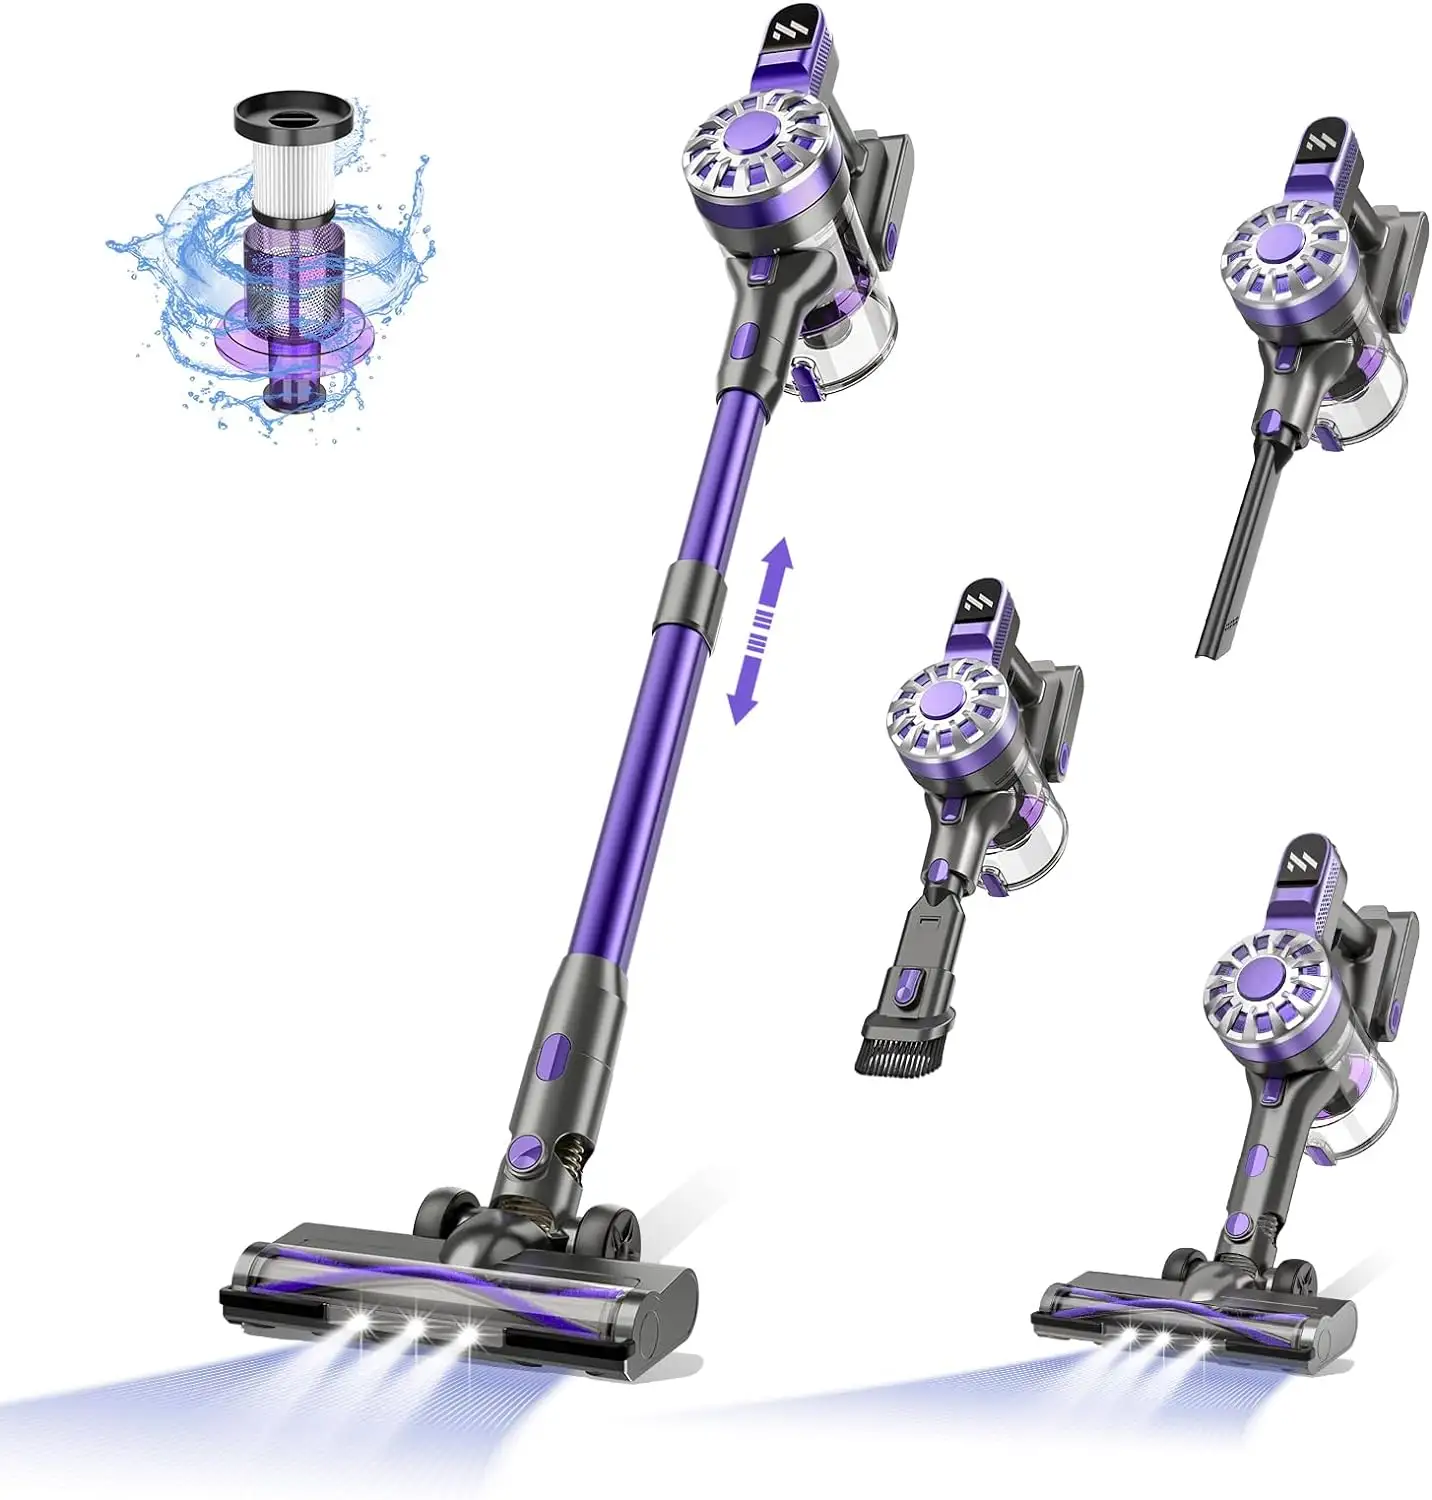 Sucção forte Domestic Handheld Stick Bagless Cordless Carpet Vacuum Cleaner com escova motorizada